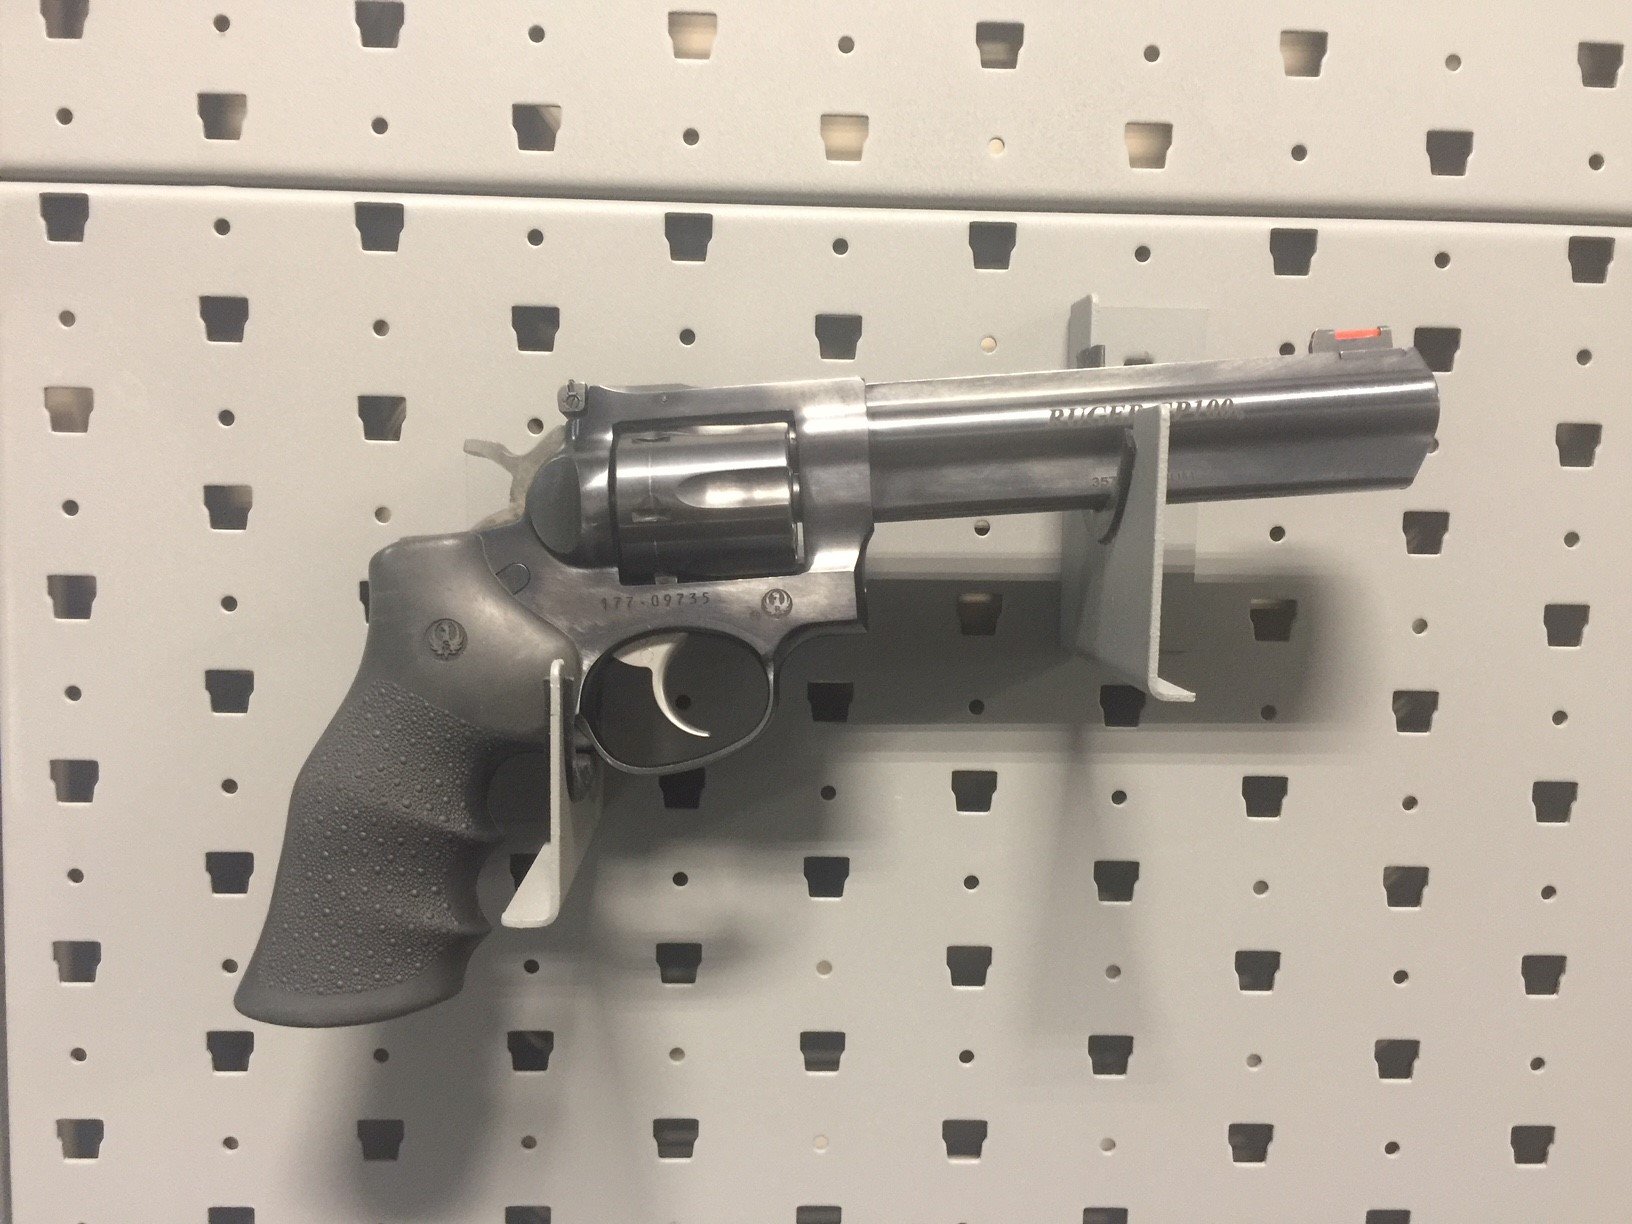 Ruger 357 Magnum
$5